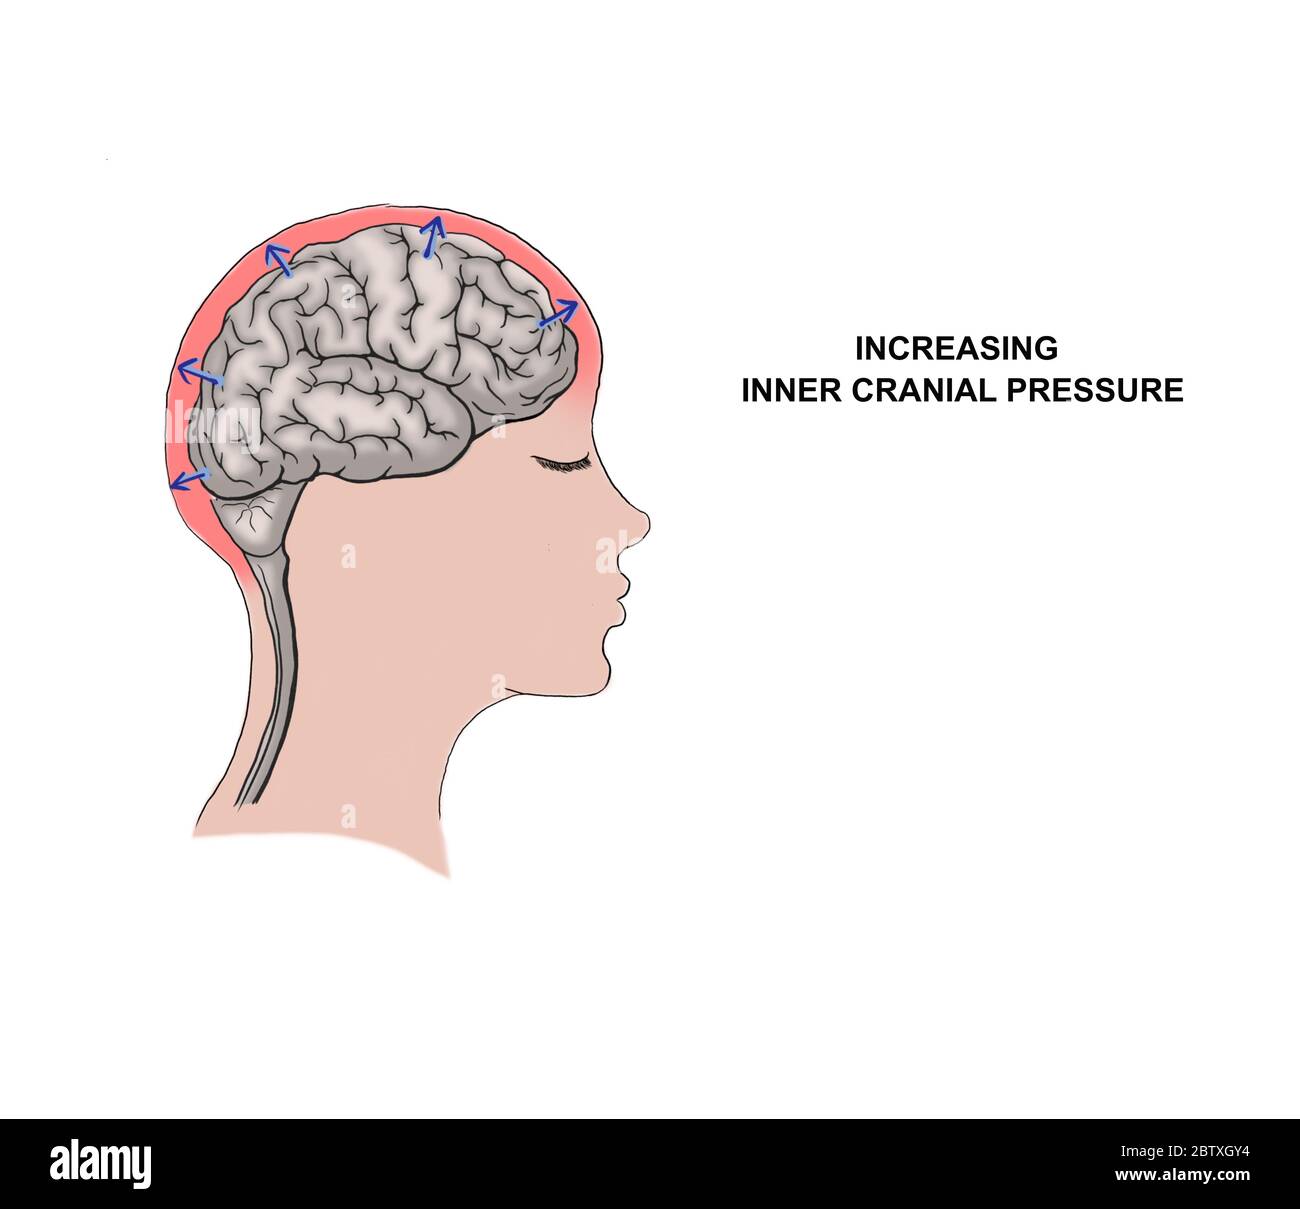 Illustration médicale de l'augmentation de la pression crânienne interne Banque D'Images